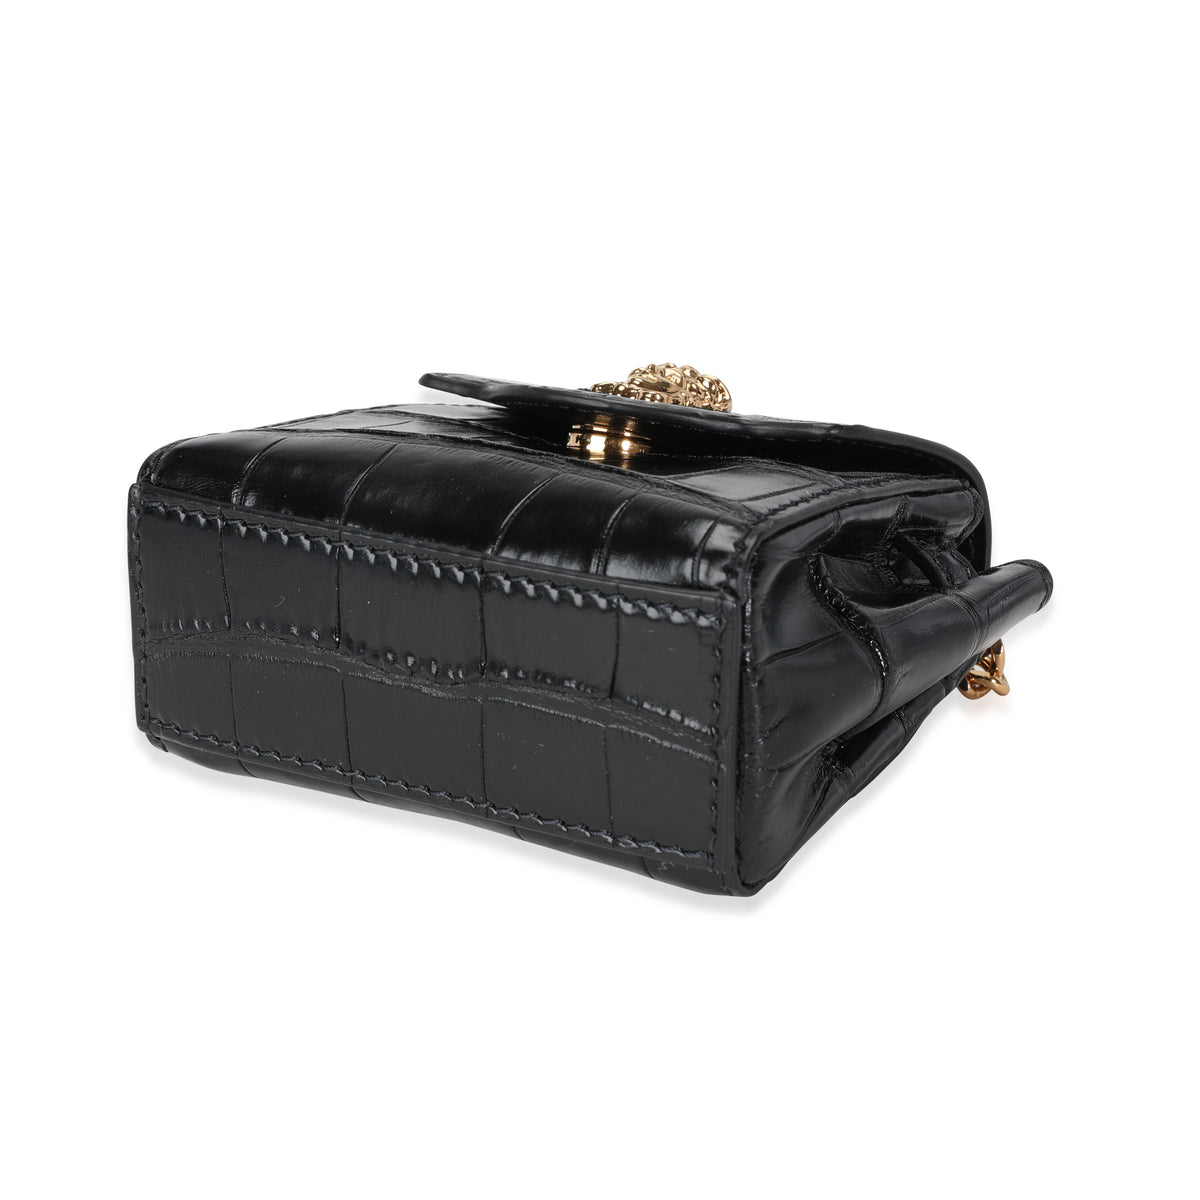 Versace Limited Edition Black Crocodile Embossed Calfskin La Medusa Micro Bag